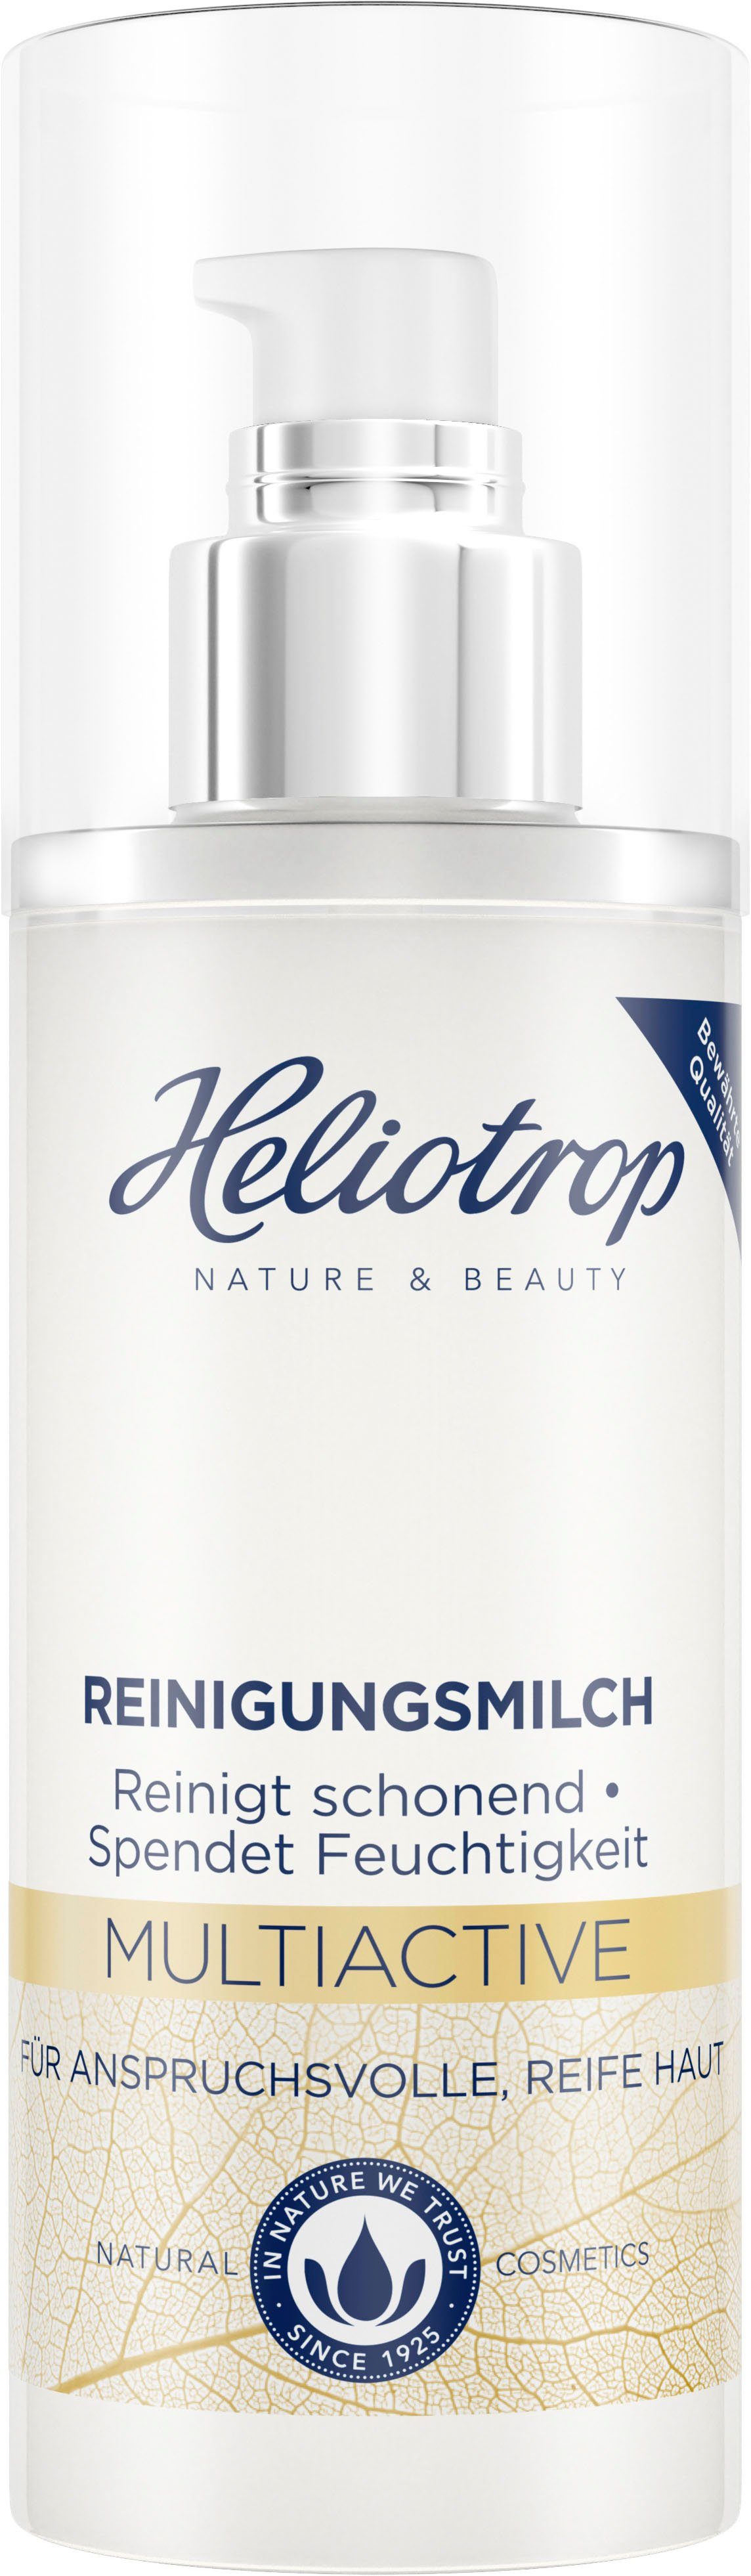 HELIOTROP Multiactive Gesichts-Reinigungsmilch